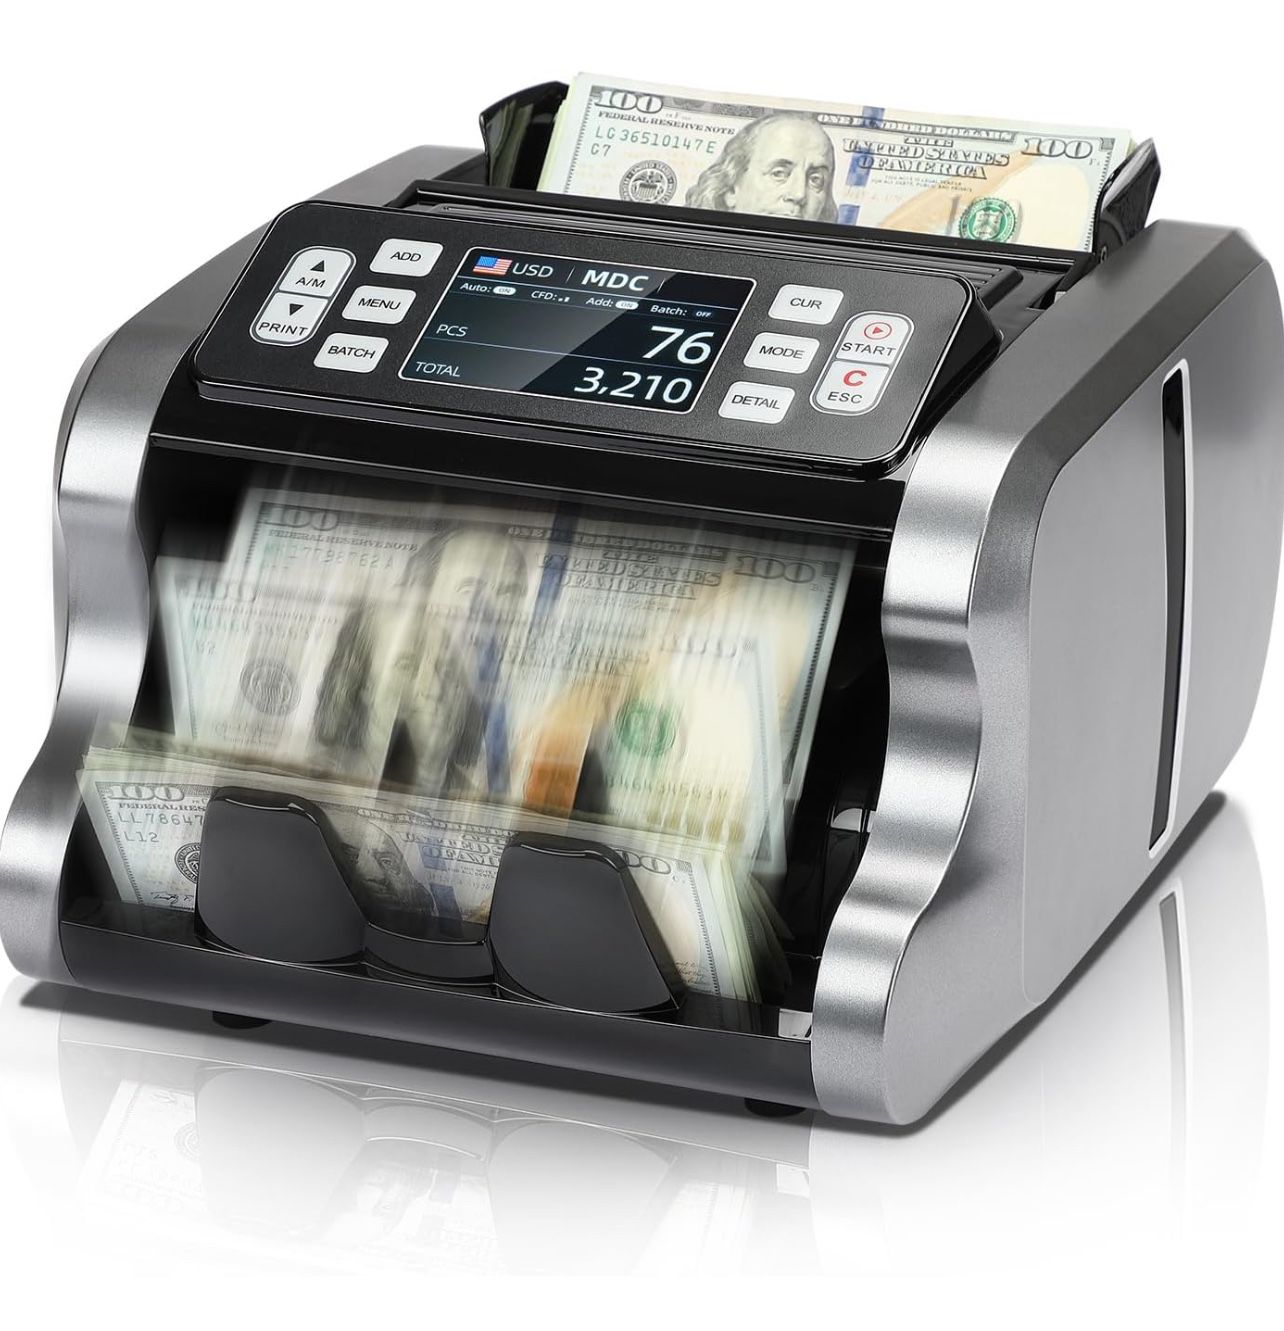 Mixed Denomination Money Counter Machine